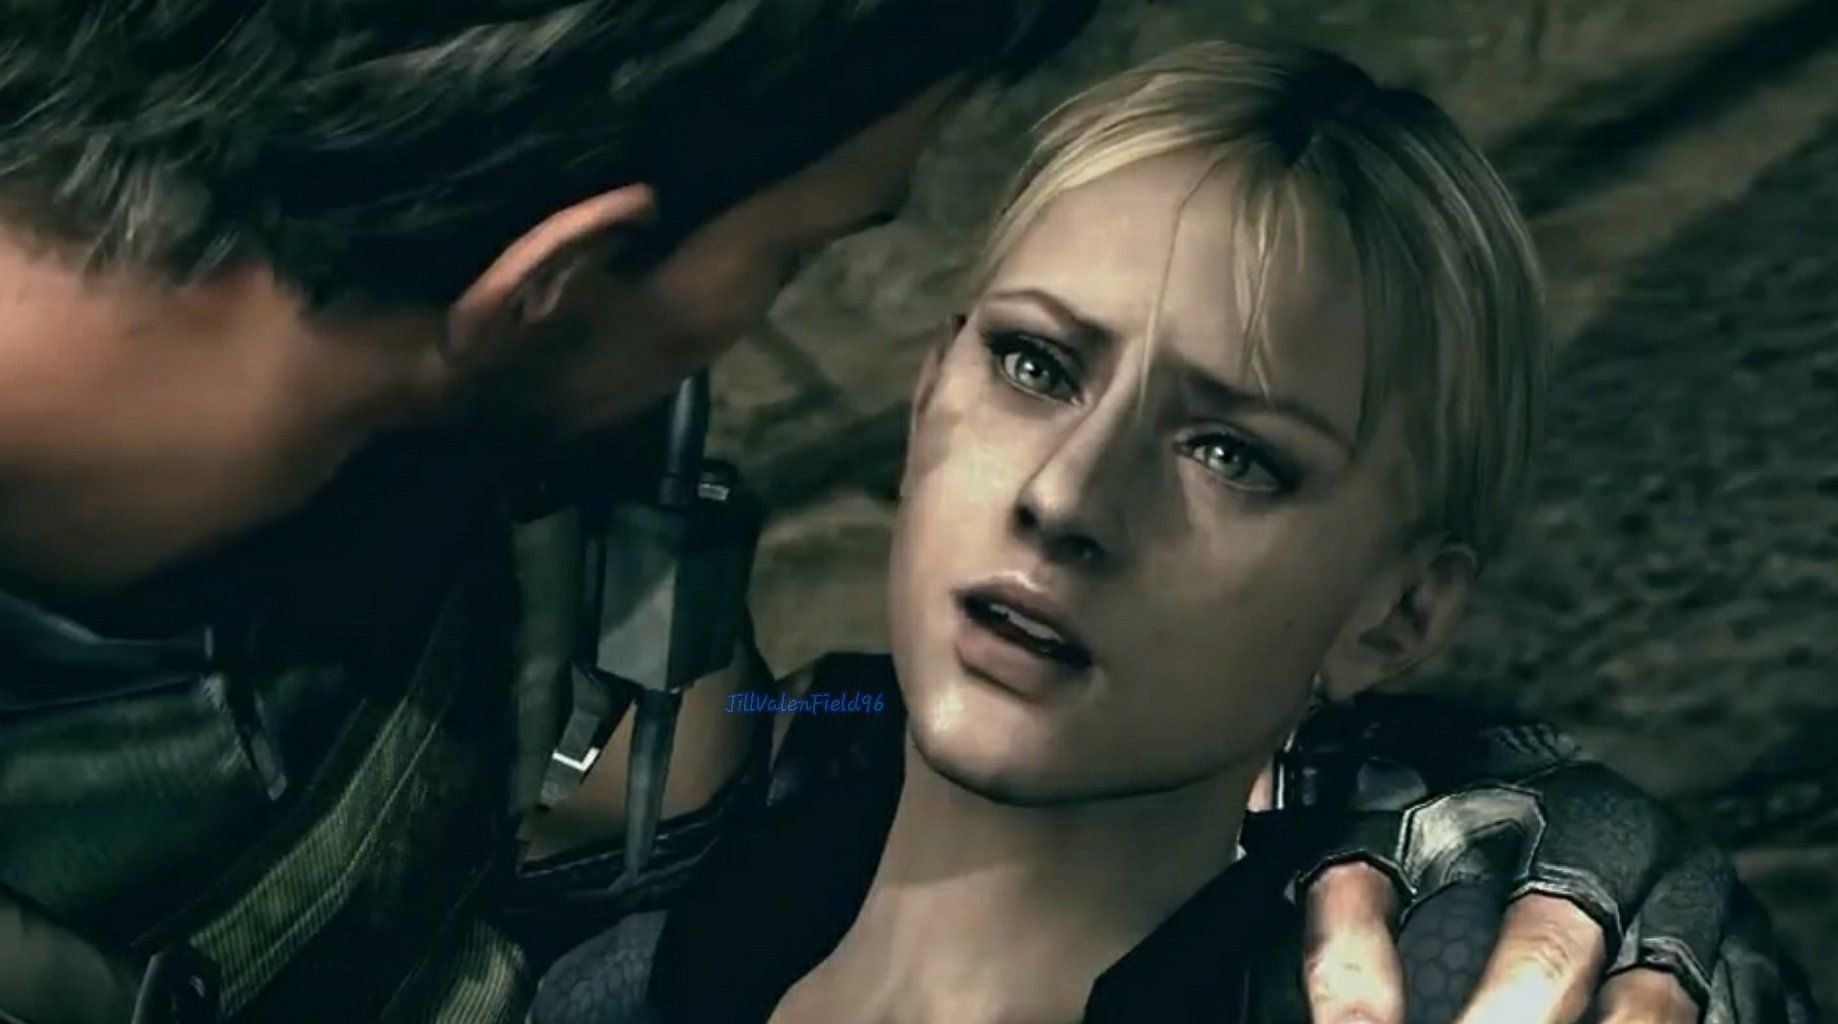 Jill Valentine in the game (Image via Capcom)